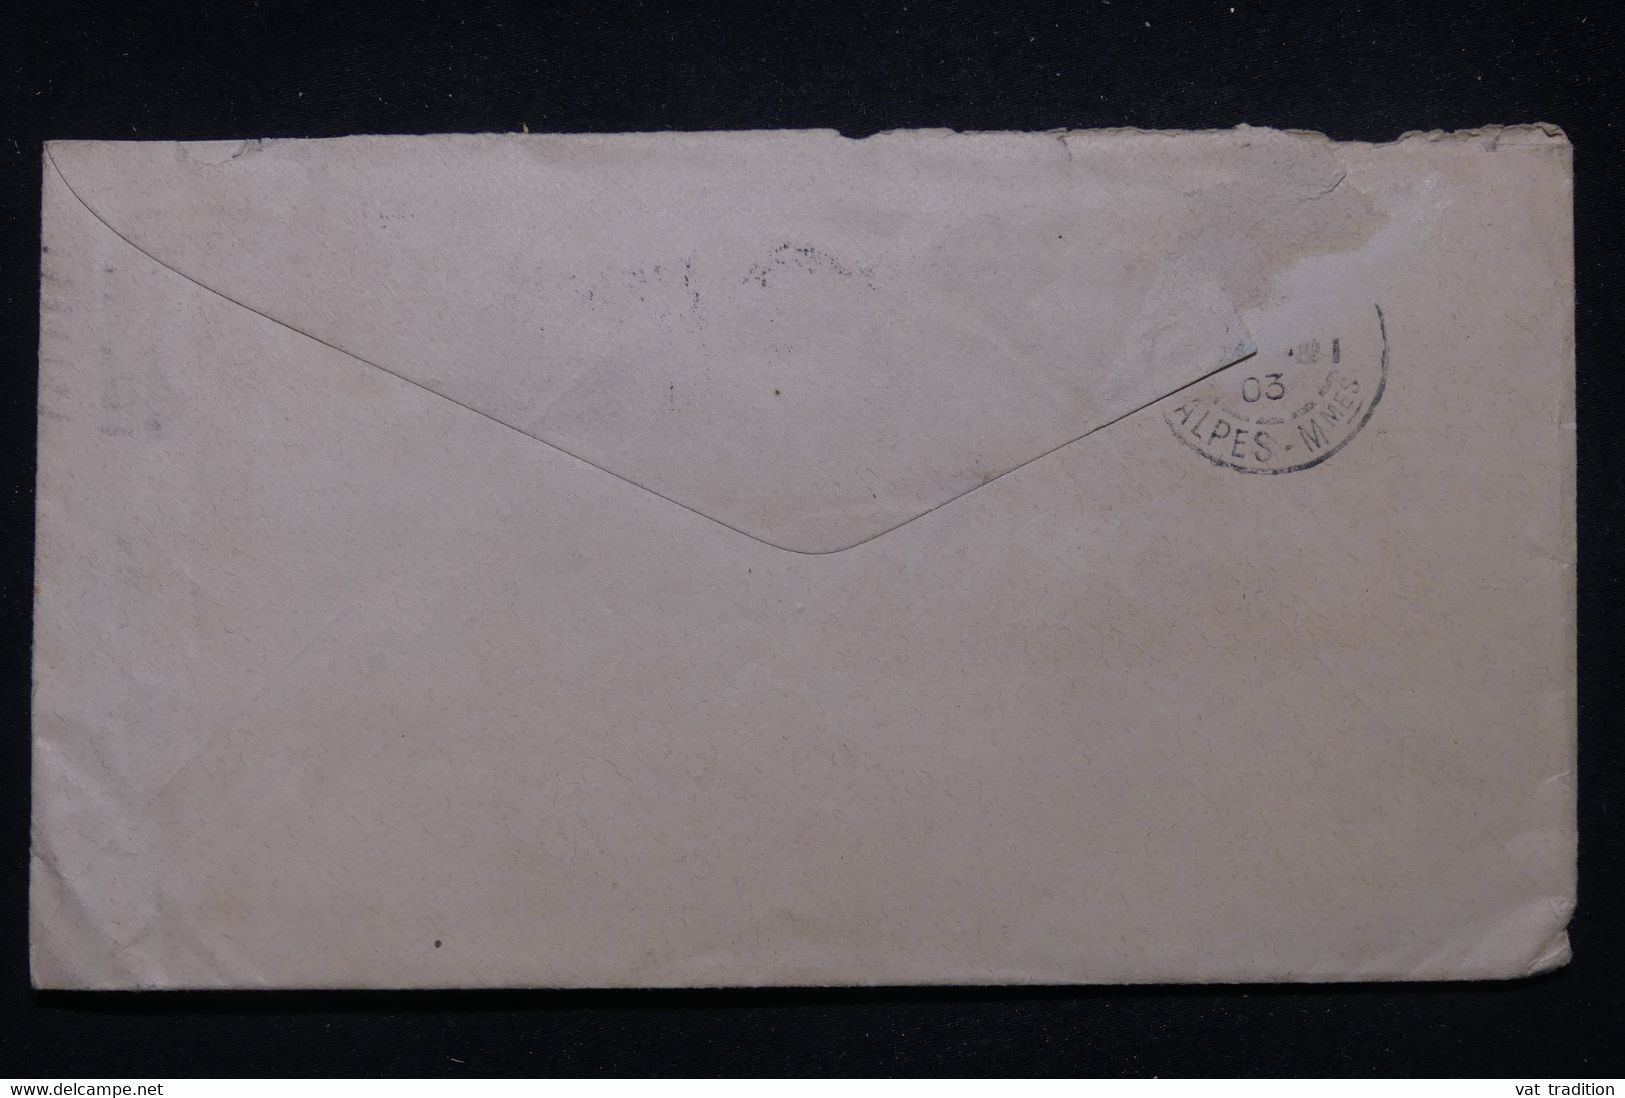 ETATS UNIS - Entier Postal + Complément De Boston Pour La France En 1903  - L 99291 - 1901-20